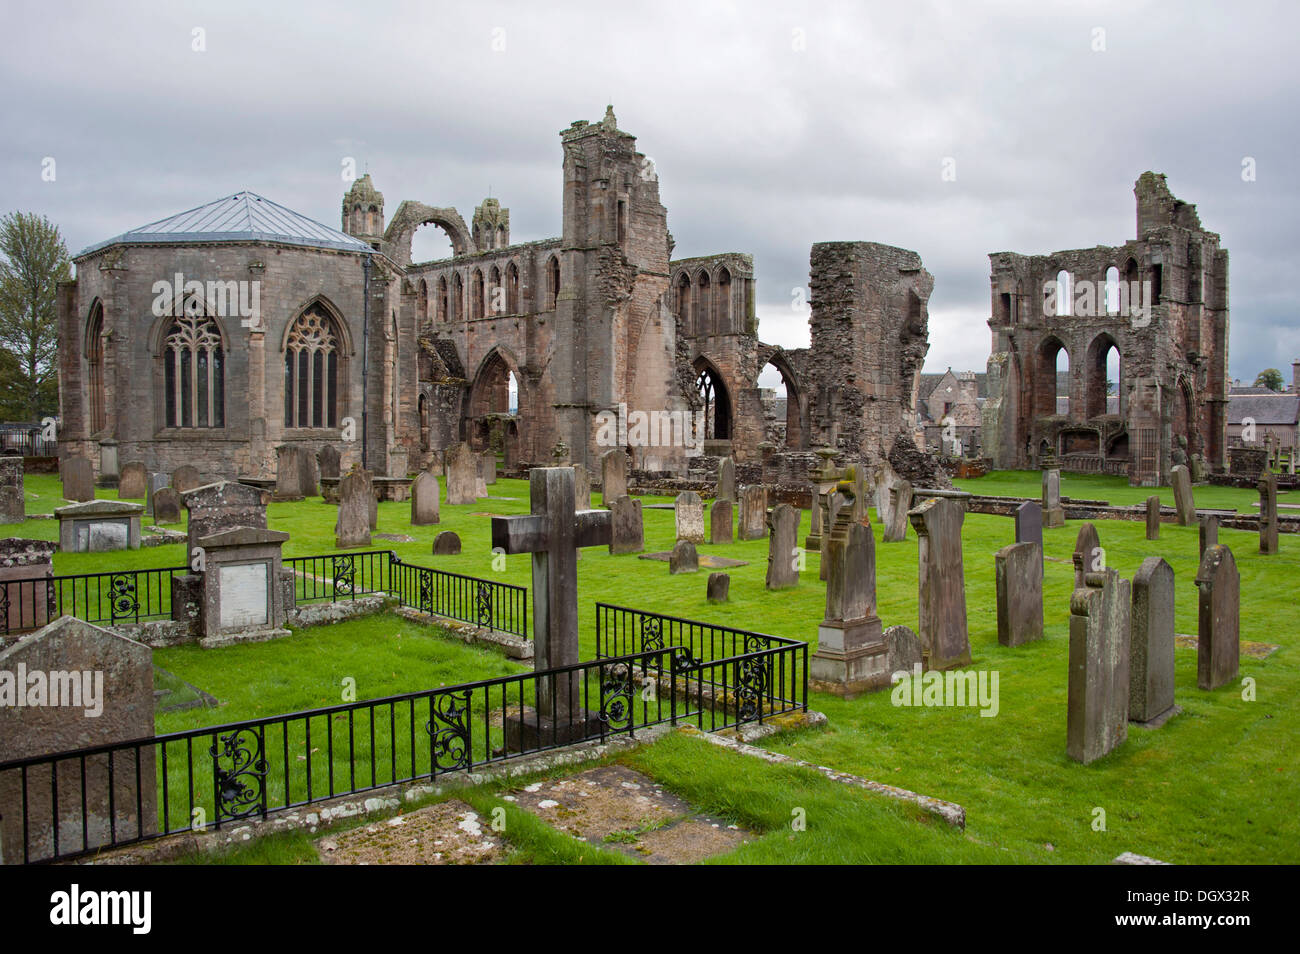 Ruines de la cathédrale d'Elgin, Moray, Ecosse, Royaume-Uni, Europe, Elgin, Moray, Ecosse, Royaume-Uni Banque D'Images